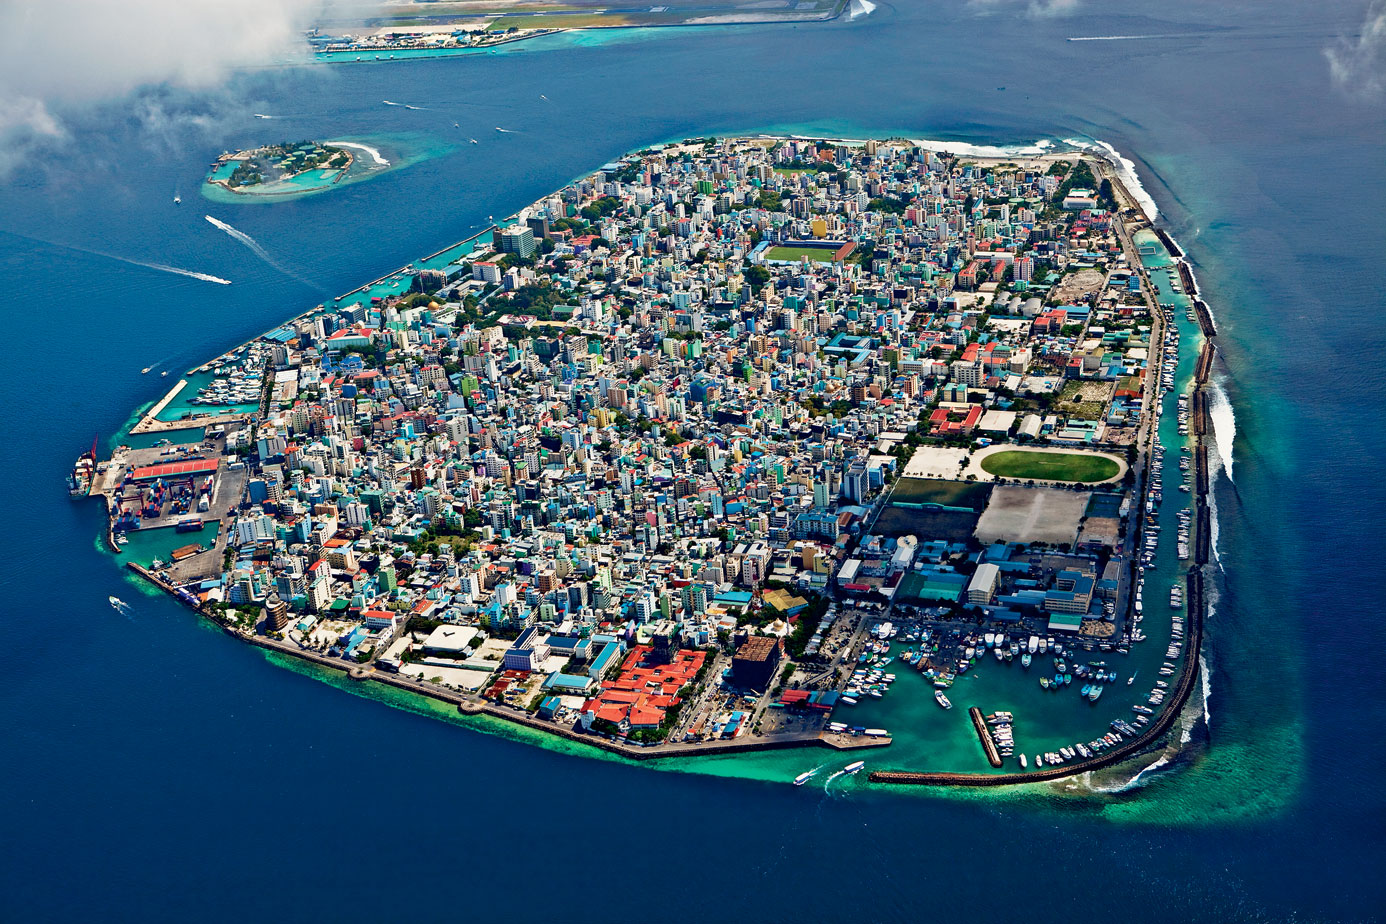 Male – stolica Malediwów